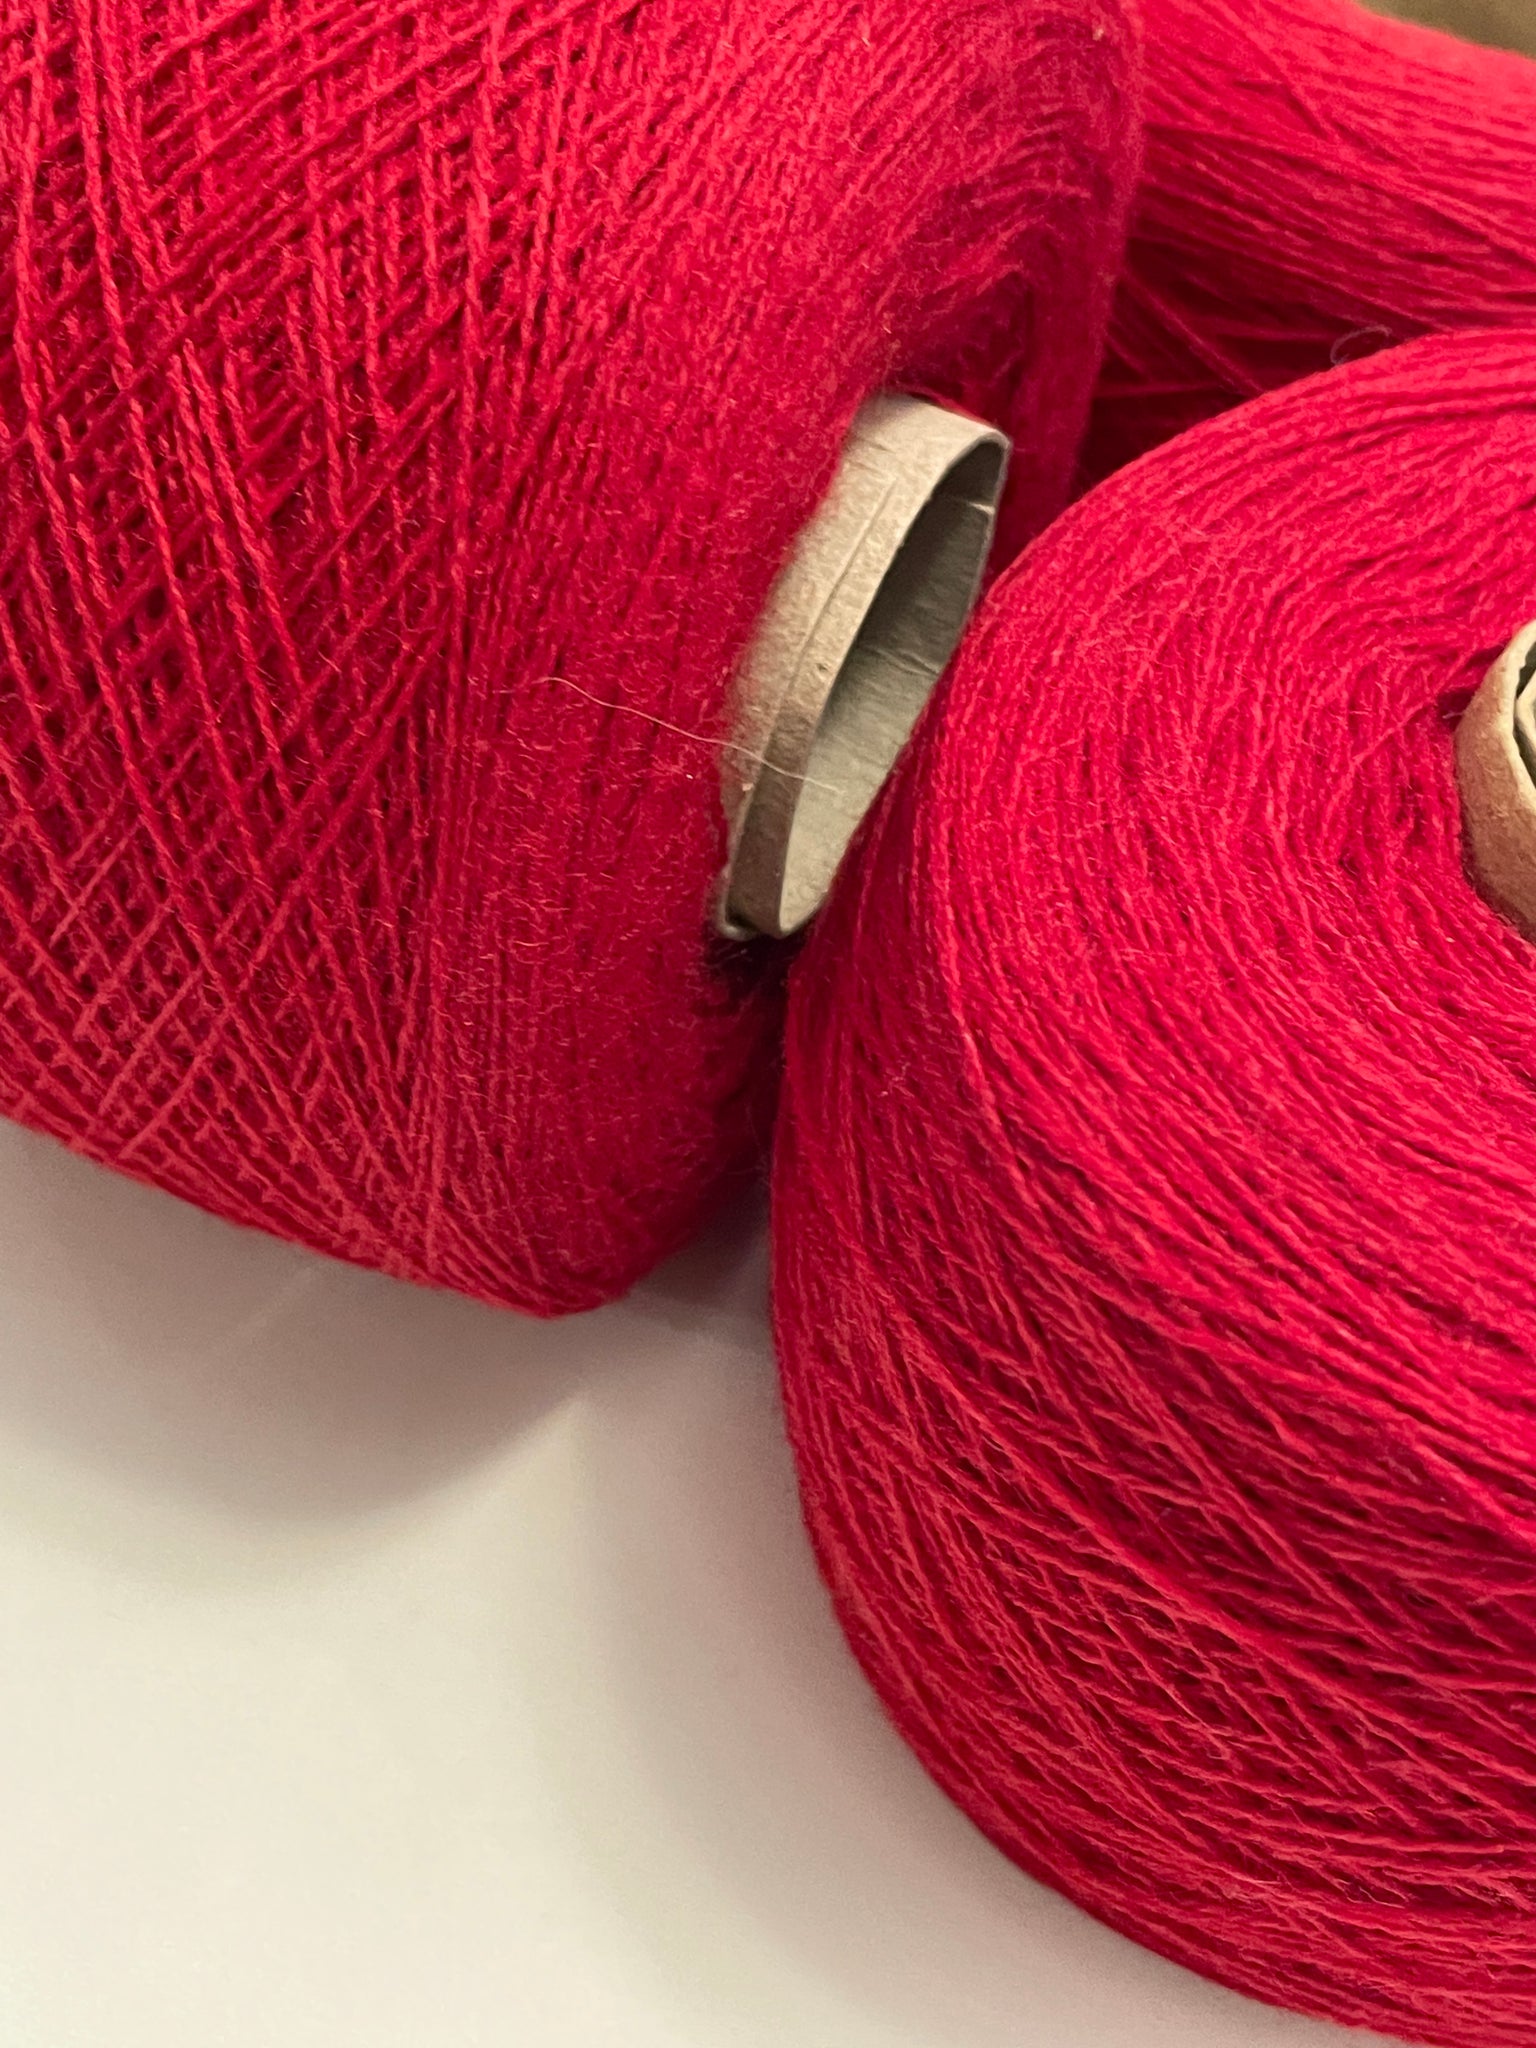 SALE Yarn Wool Bundle - Red